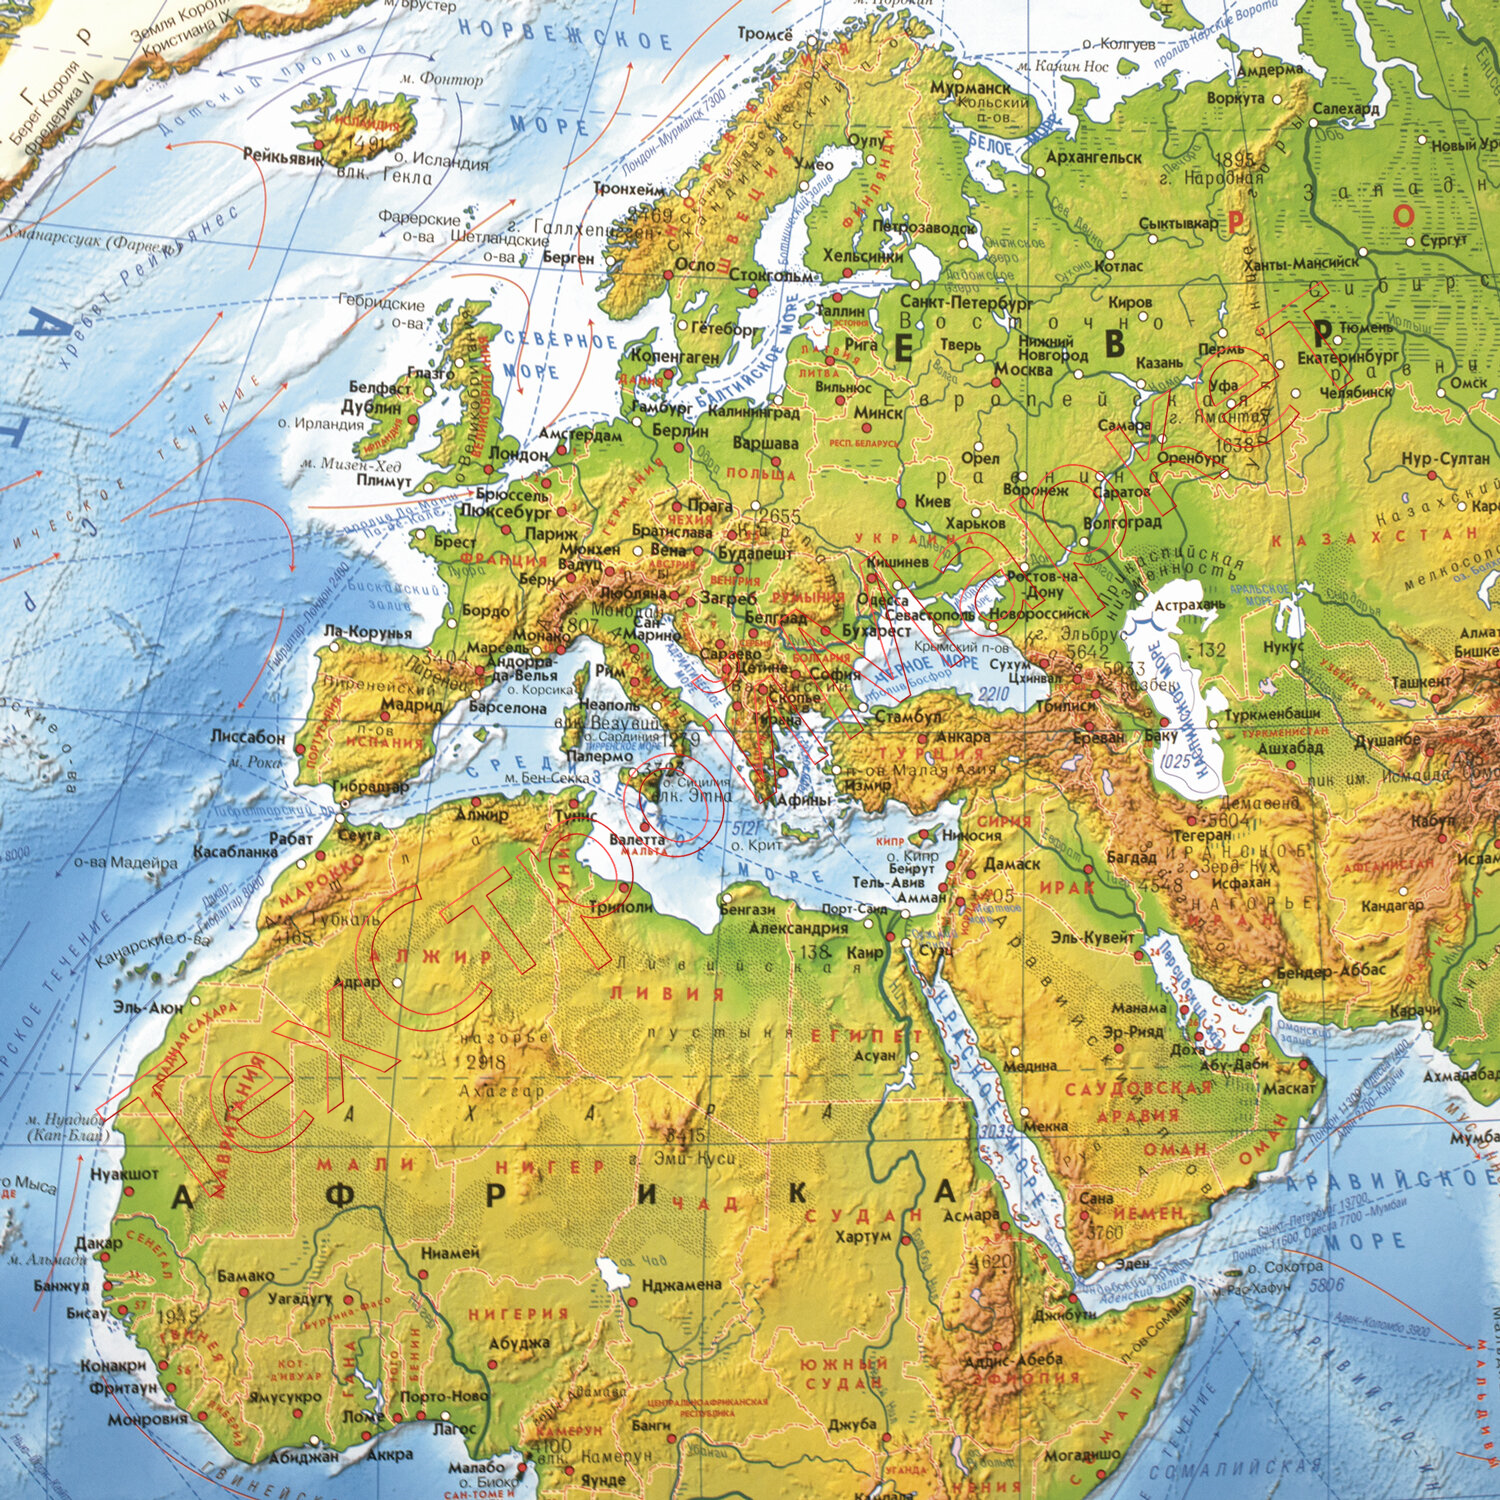 Карта мира физическая 101х66 см, 1:29М, с ламинацией, интерактивная, европодвес, BRAUBERG, 112377